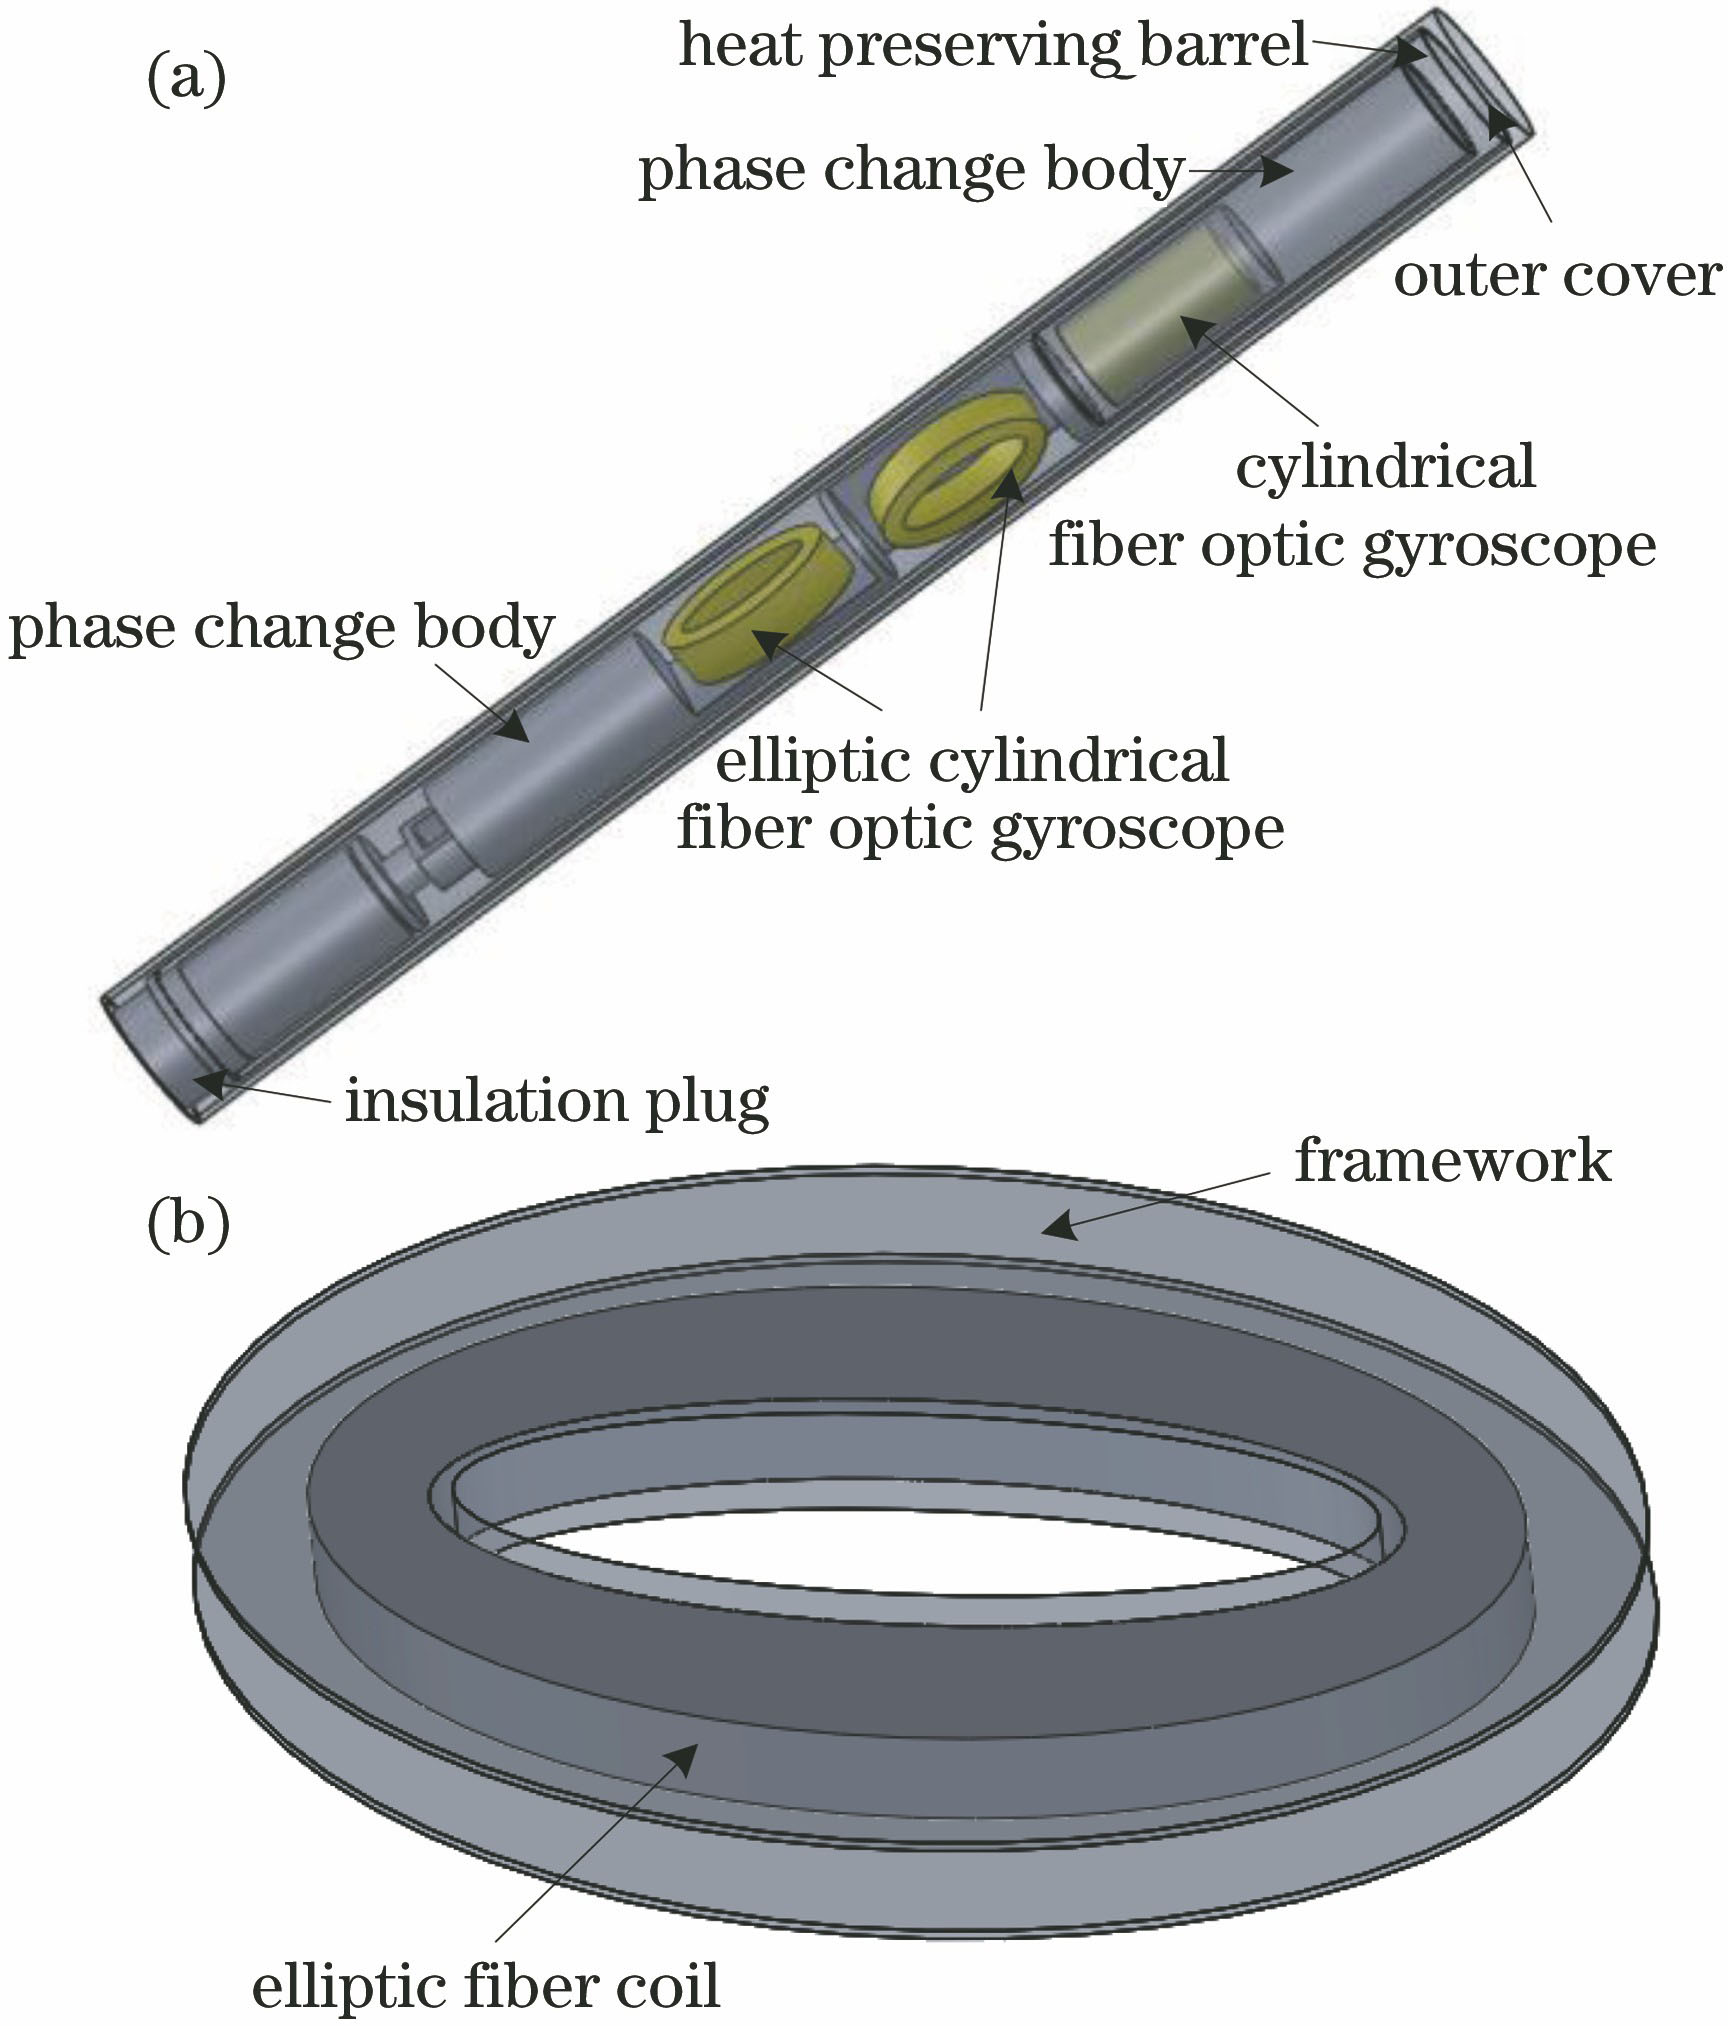 (a) Schematic diagram of IWD; (b) schematic diagram of elliptic cylindrical FOG